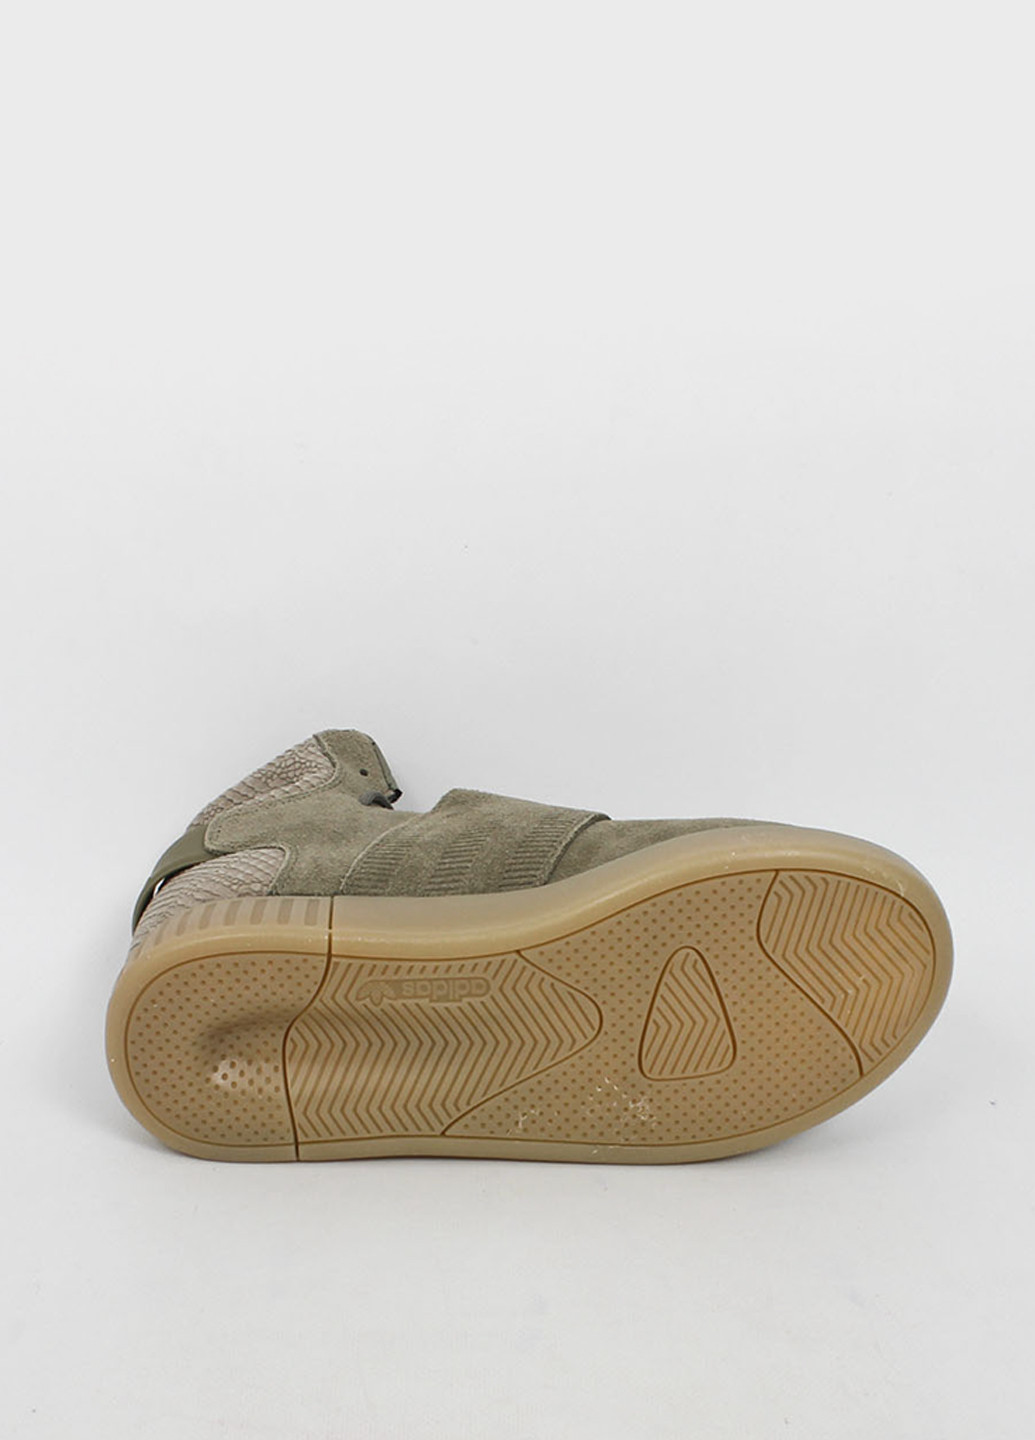 Оливковые (хаки) демисезонные кроссовки adidas Originals Tubular Invader Strap